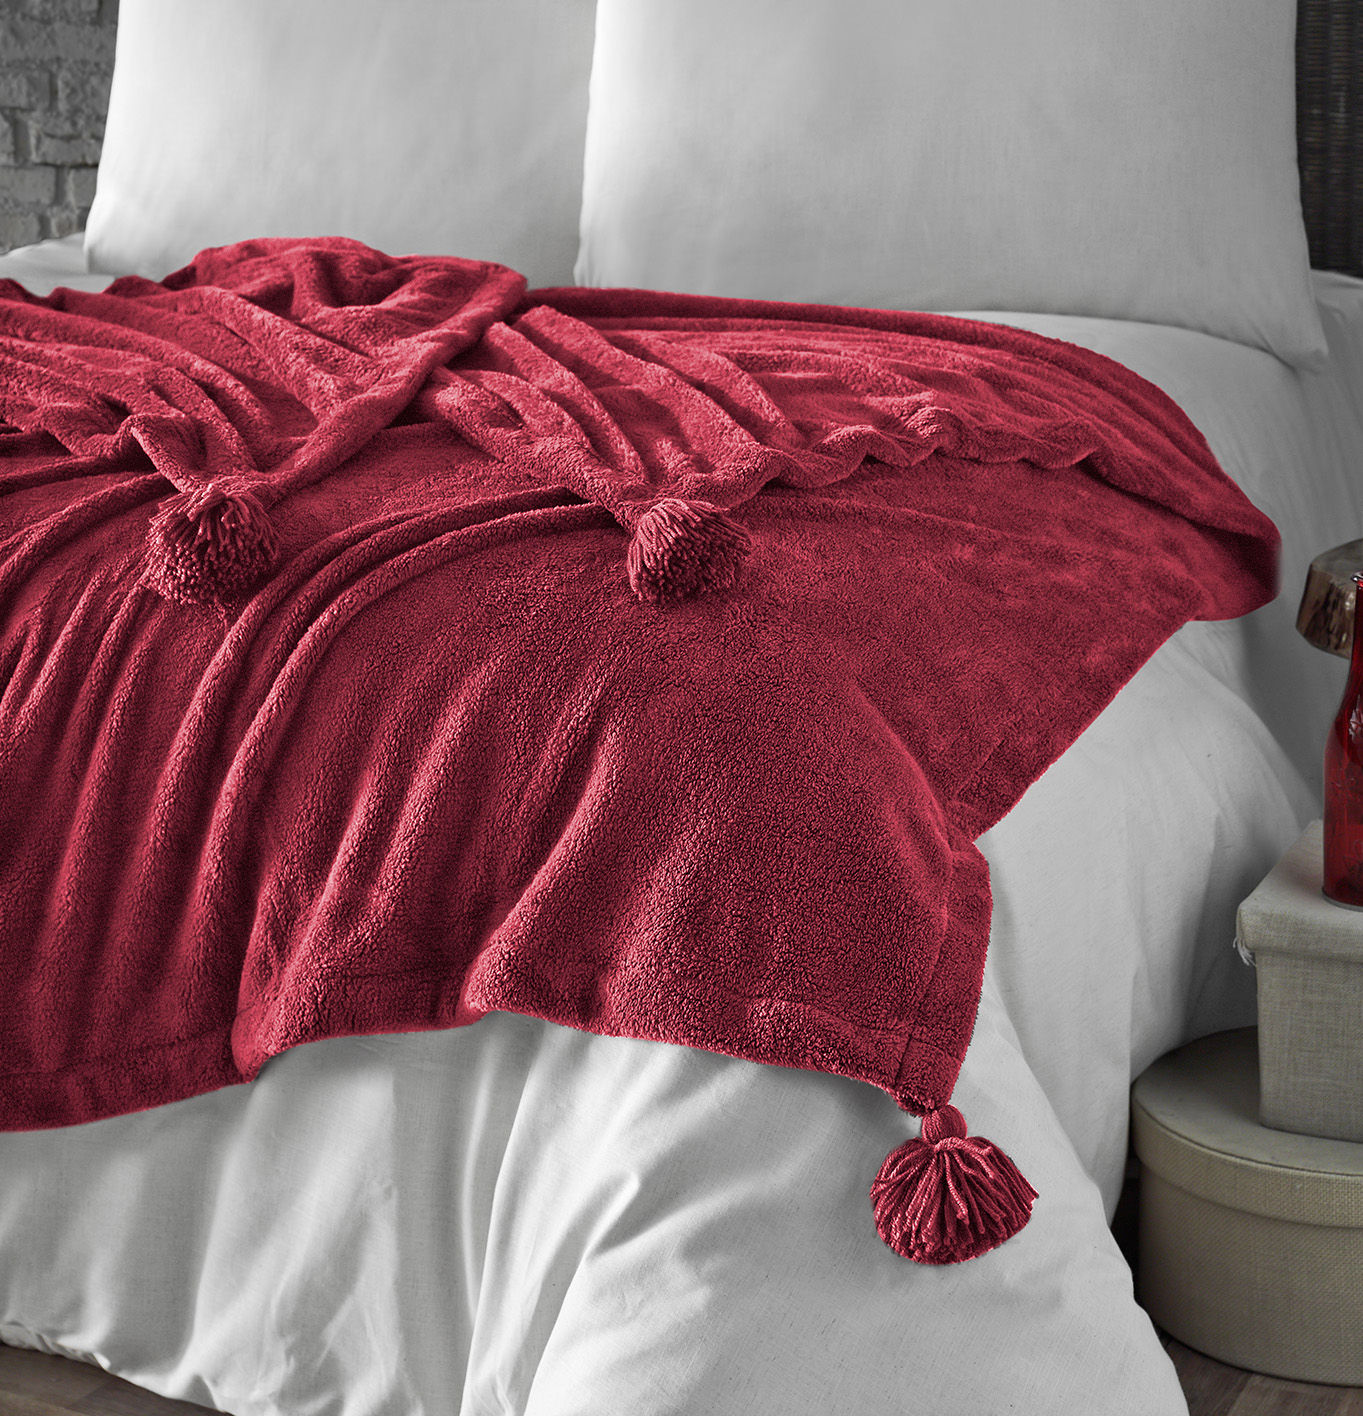 Pătură Puff Red, 160 x 200 cm